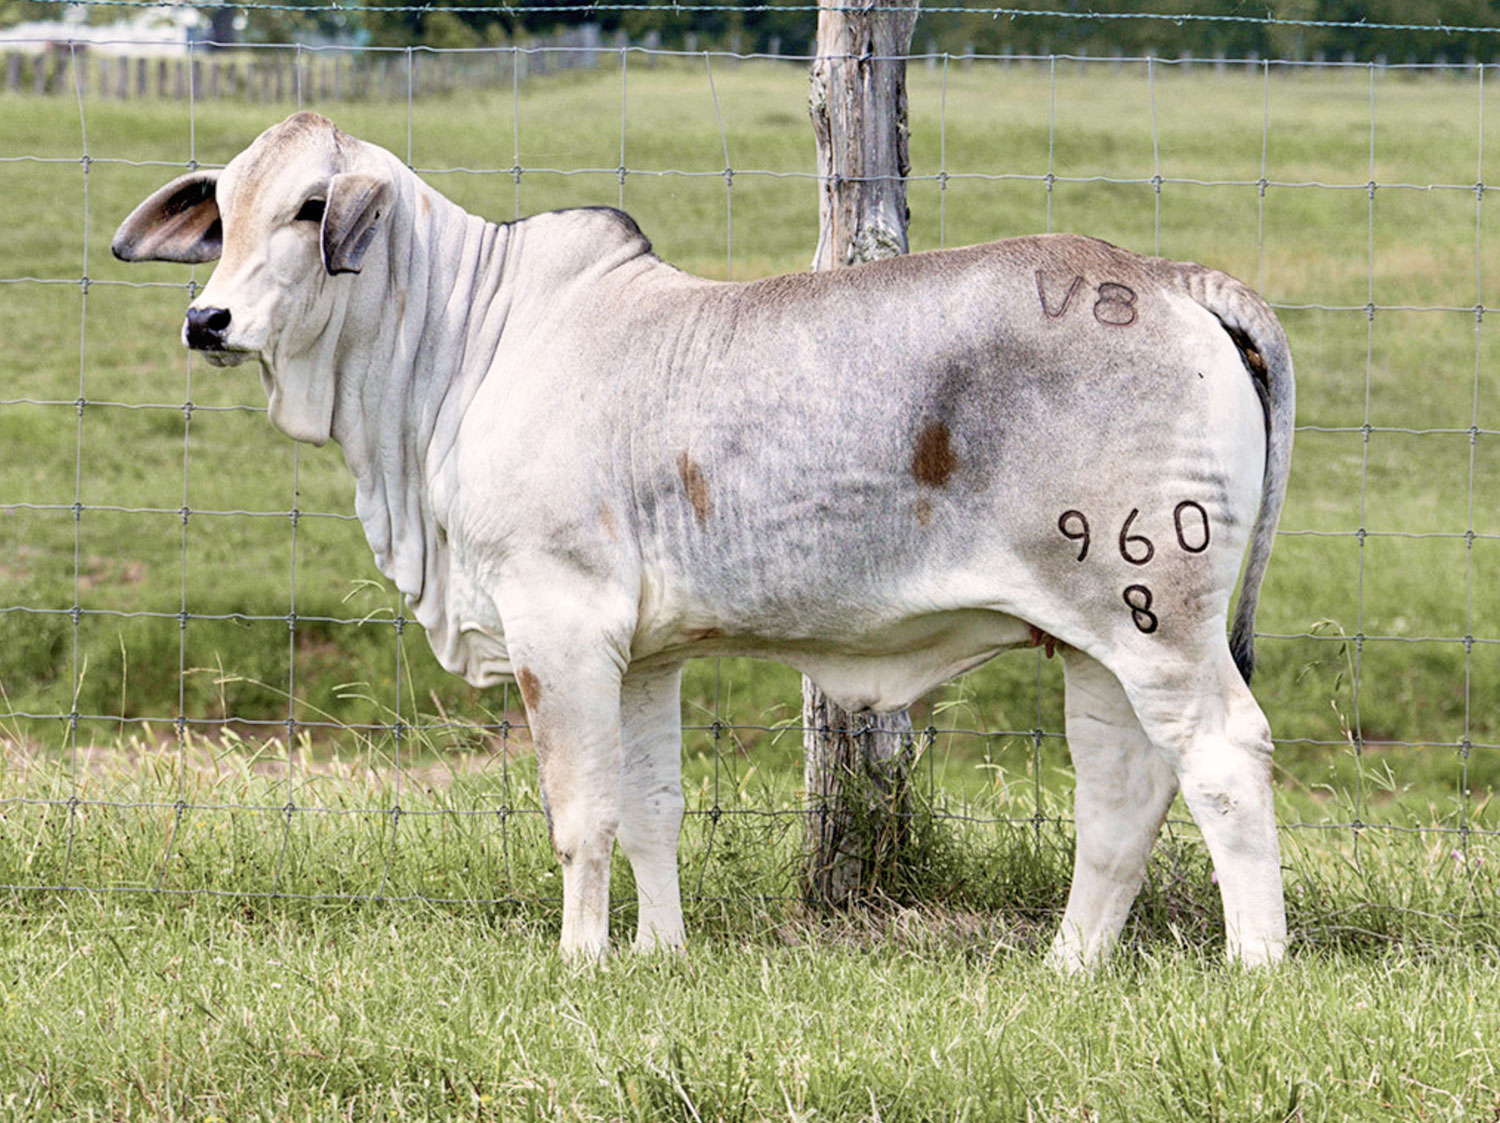 Miss V8 960/8 past Made for Magic sale heifer at V8 Ranch